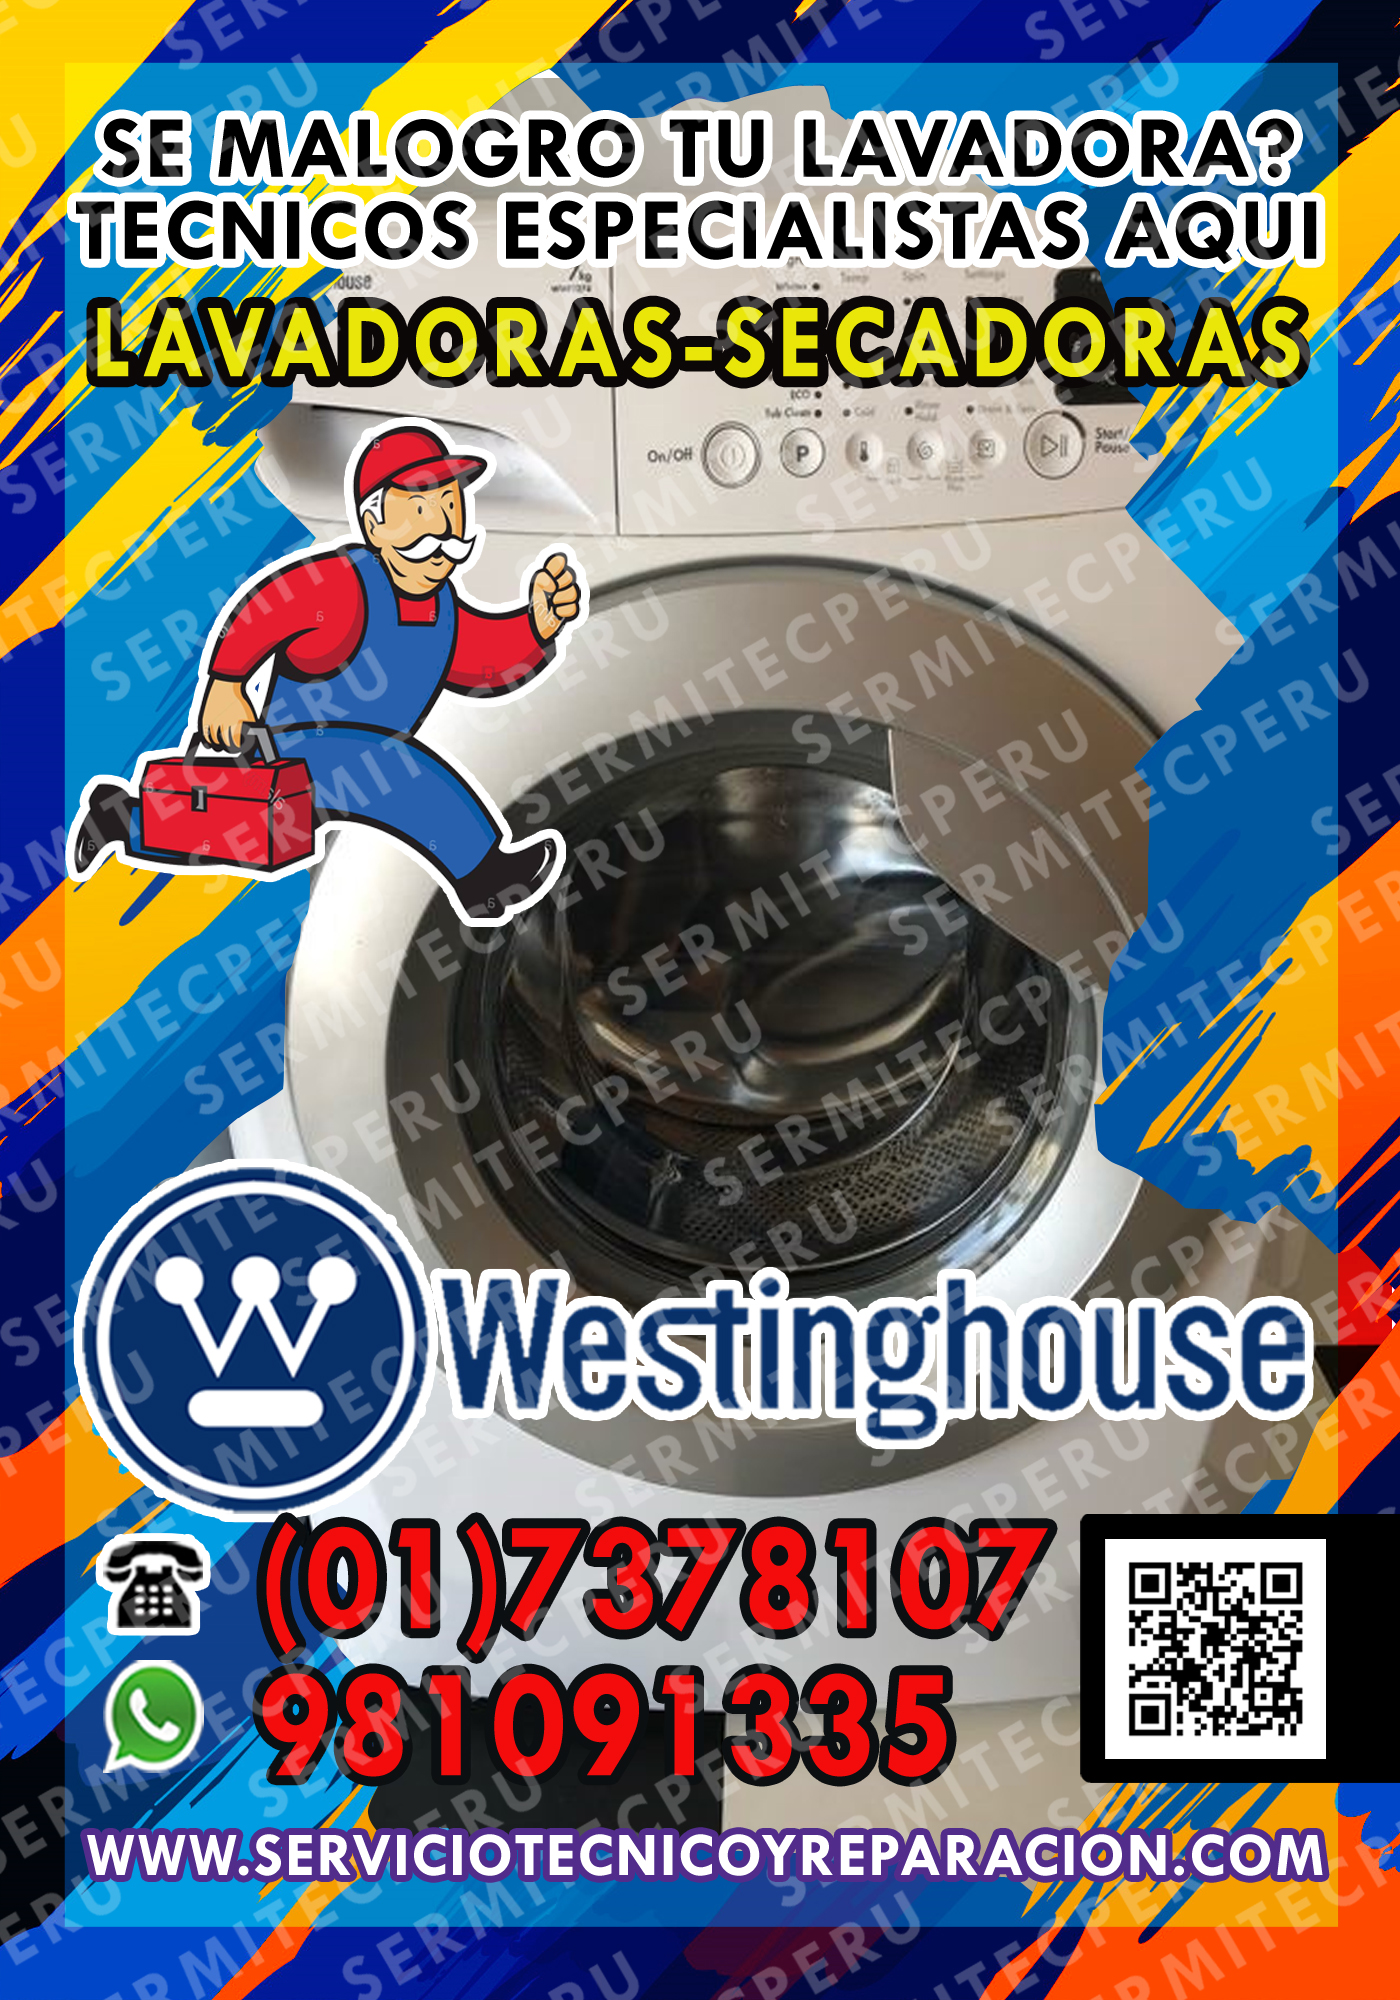 Soluciones Inmediatas->Lavadoras White Westinghouse #7378107 en la Molina